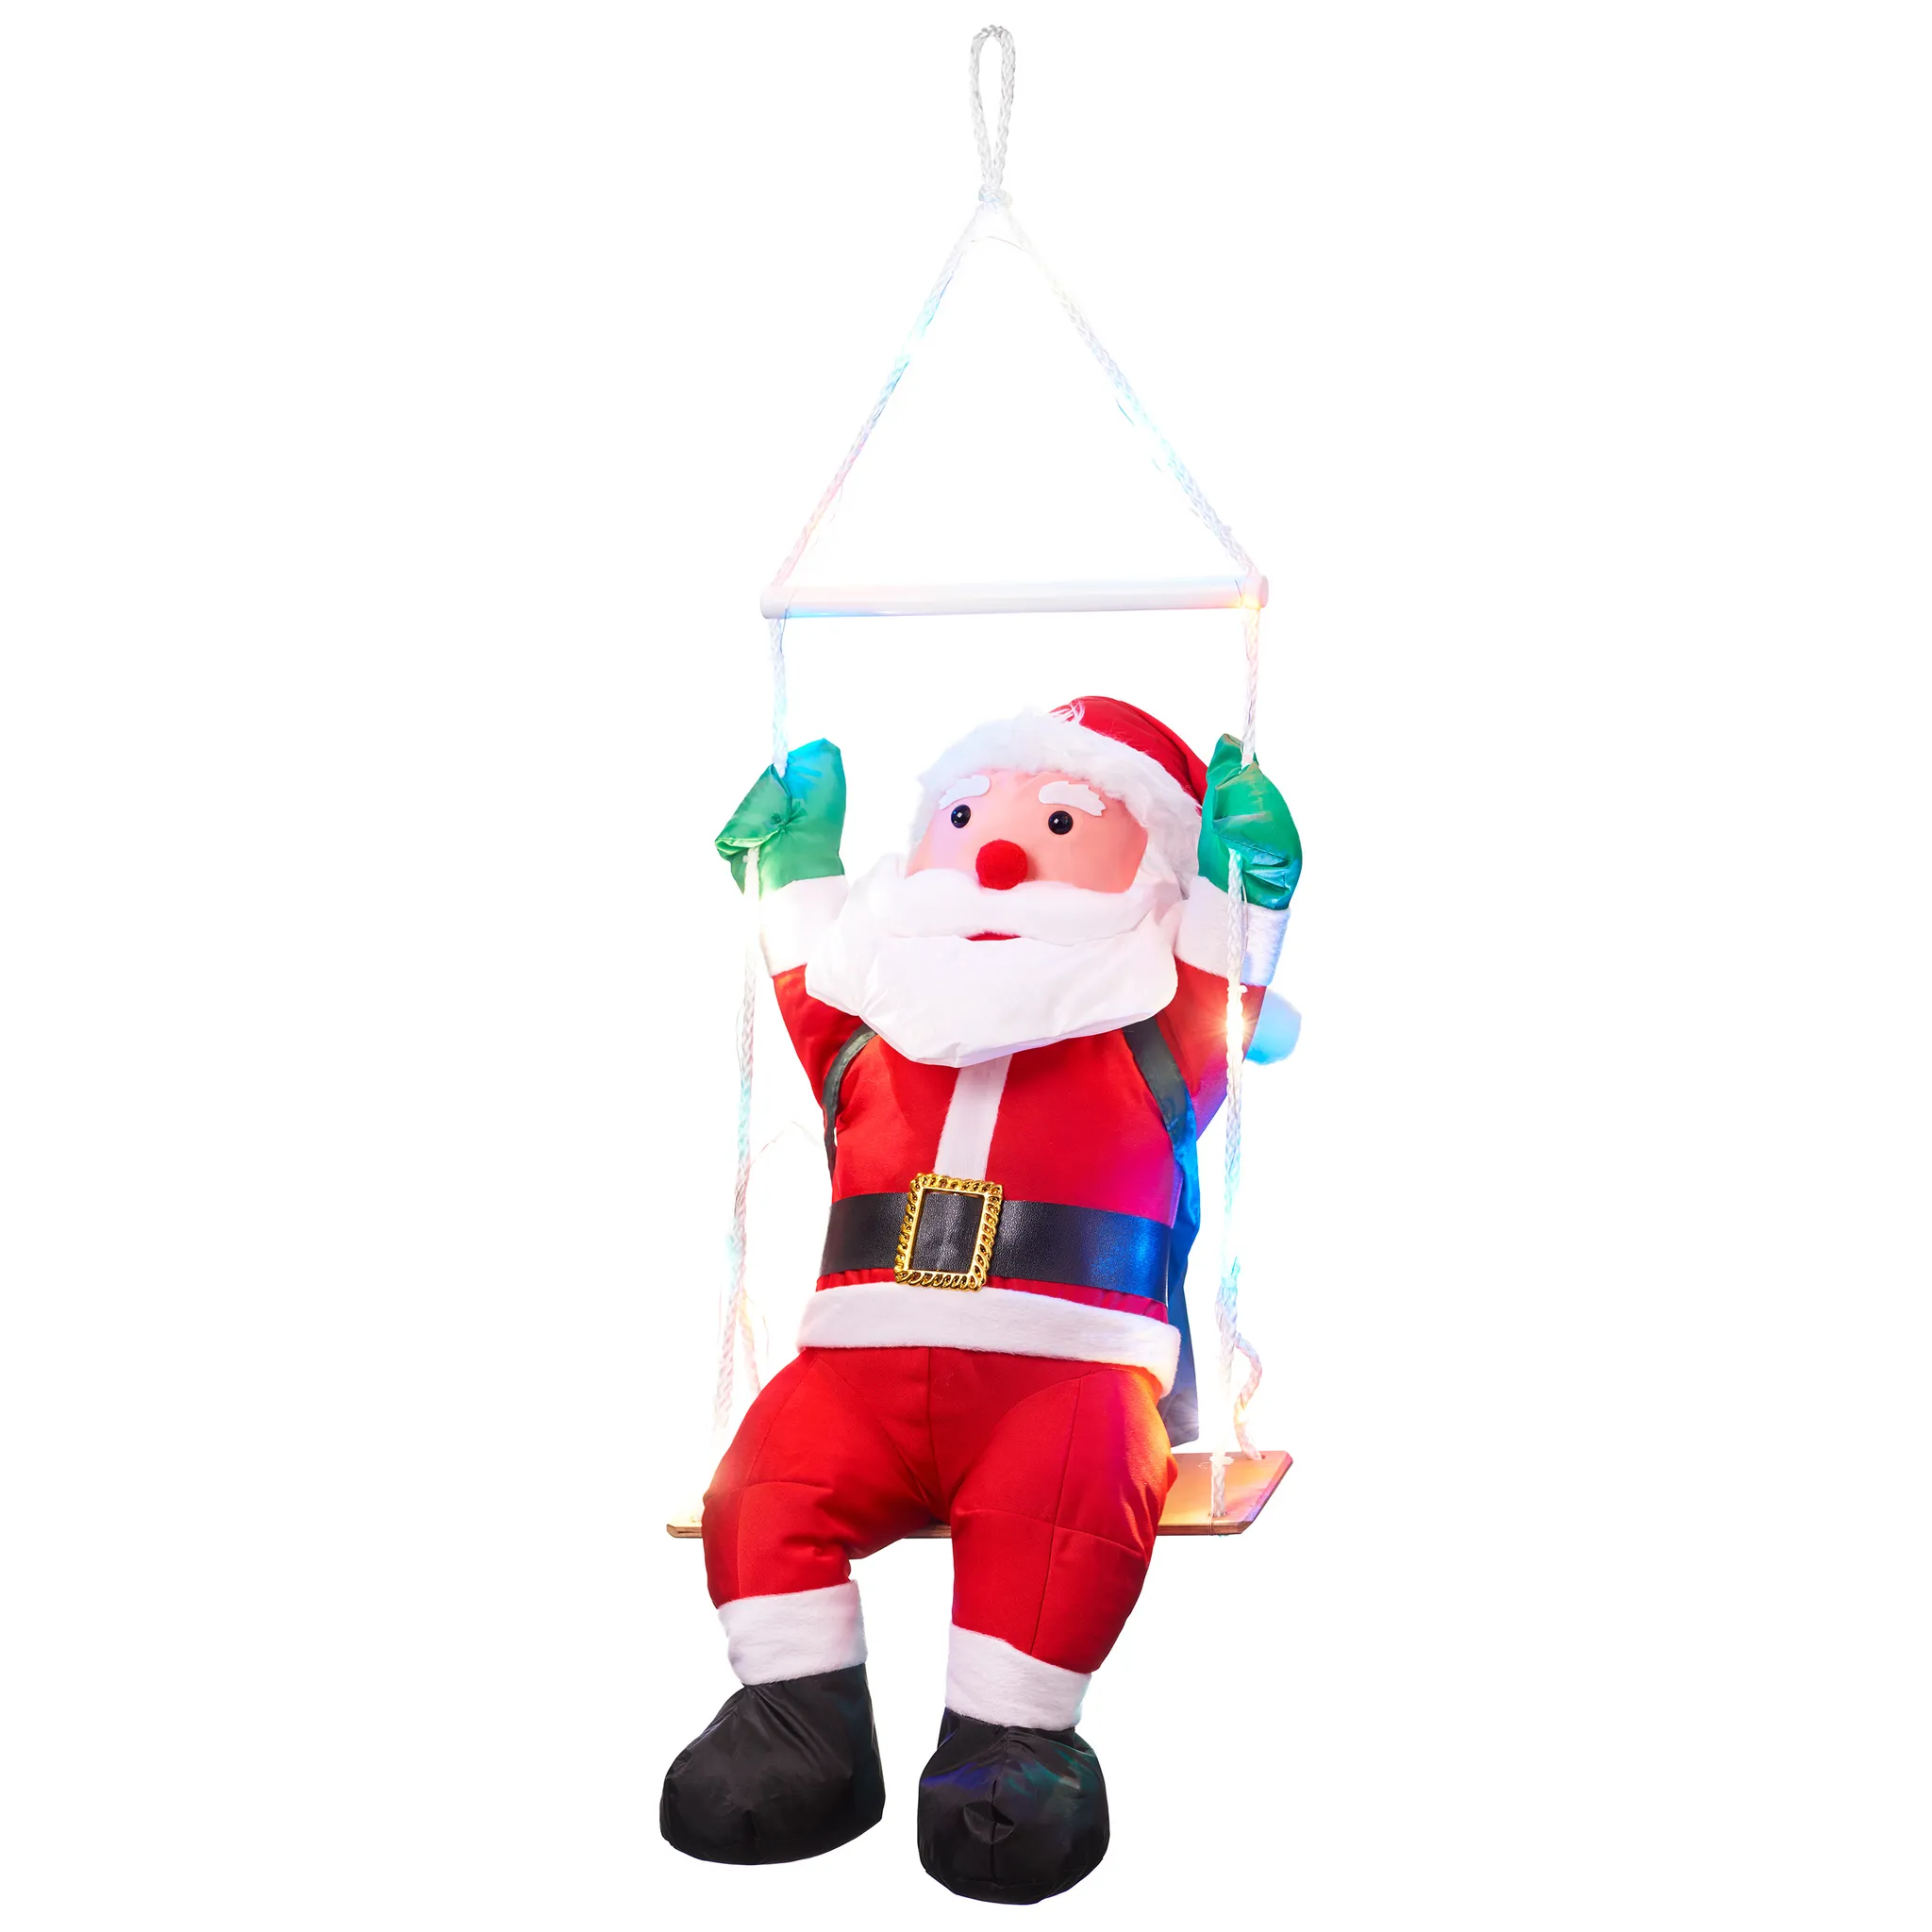 Sitzender Weihnachtsmann auf einer Schaukel, mit 20 bunten LED